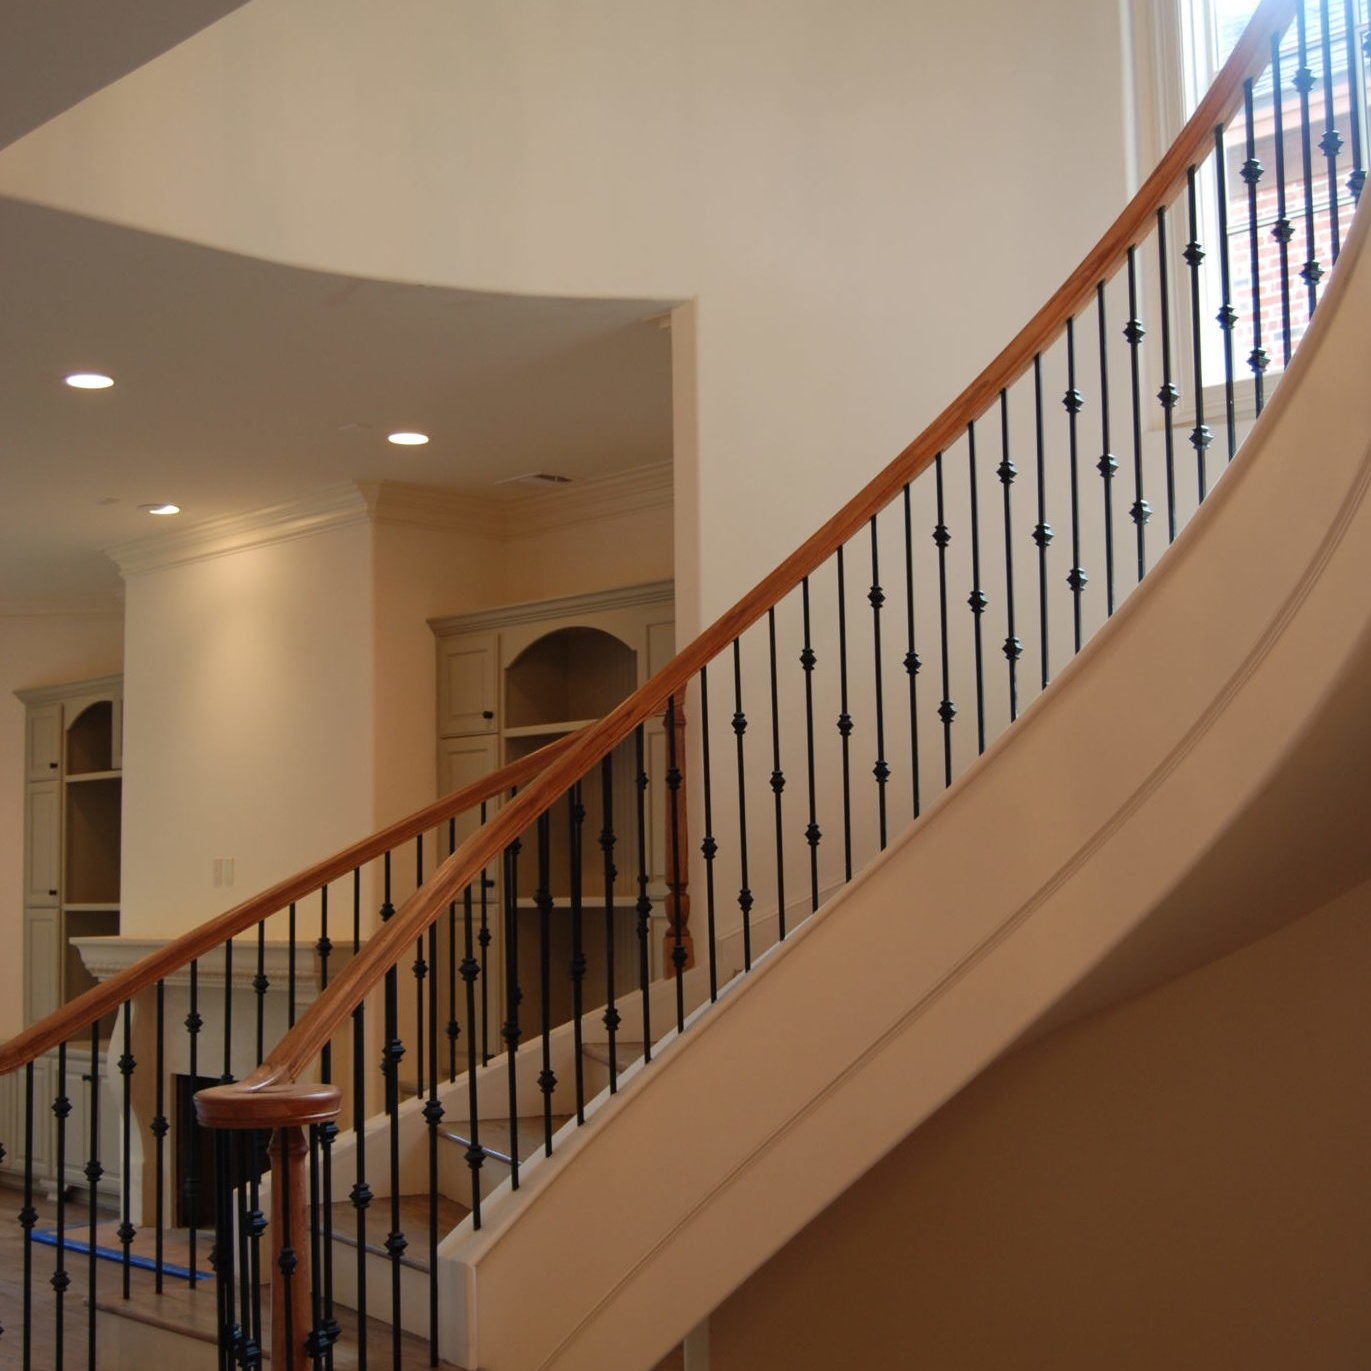 Stairway interior design